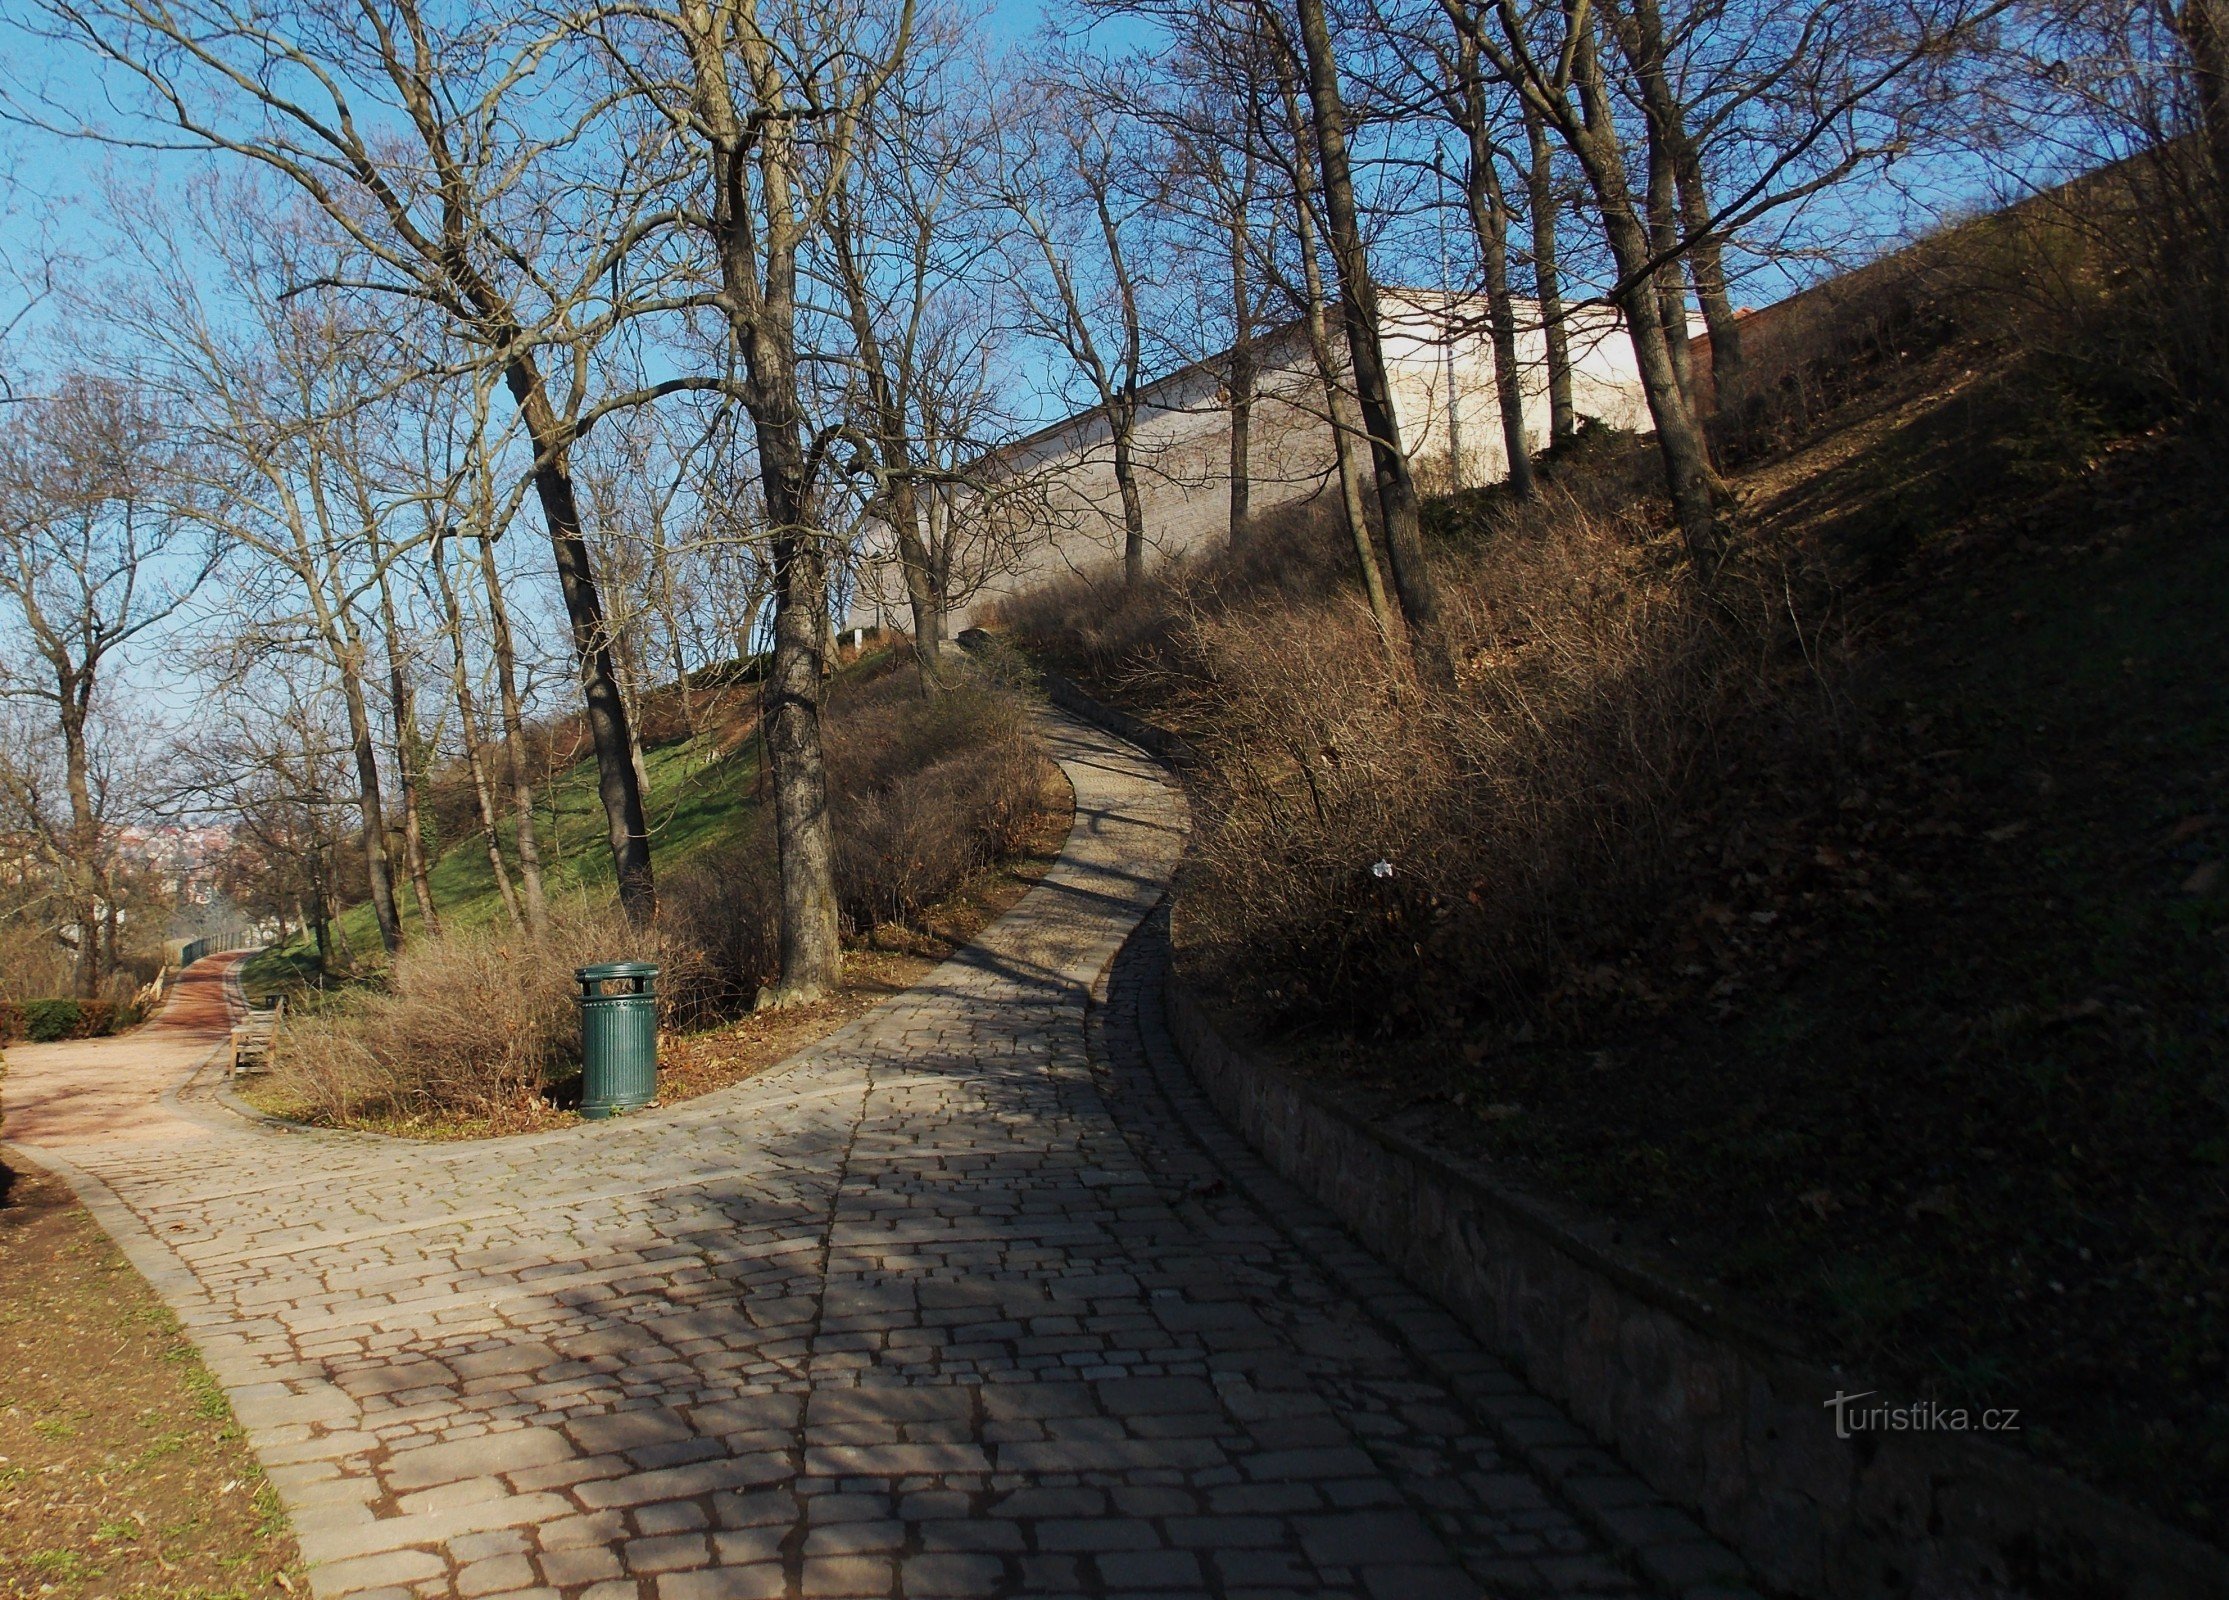 Đi bộ qua công viên thành phố Špilberk ở Brno